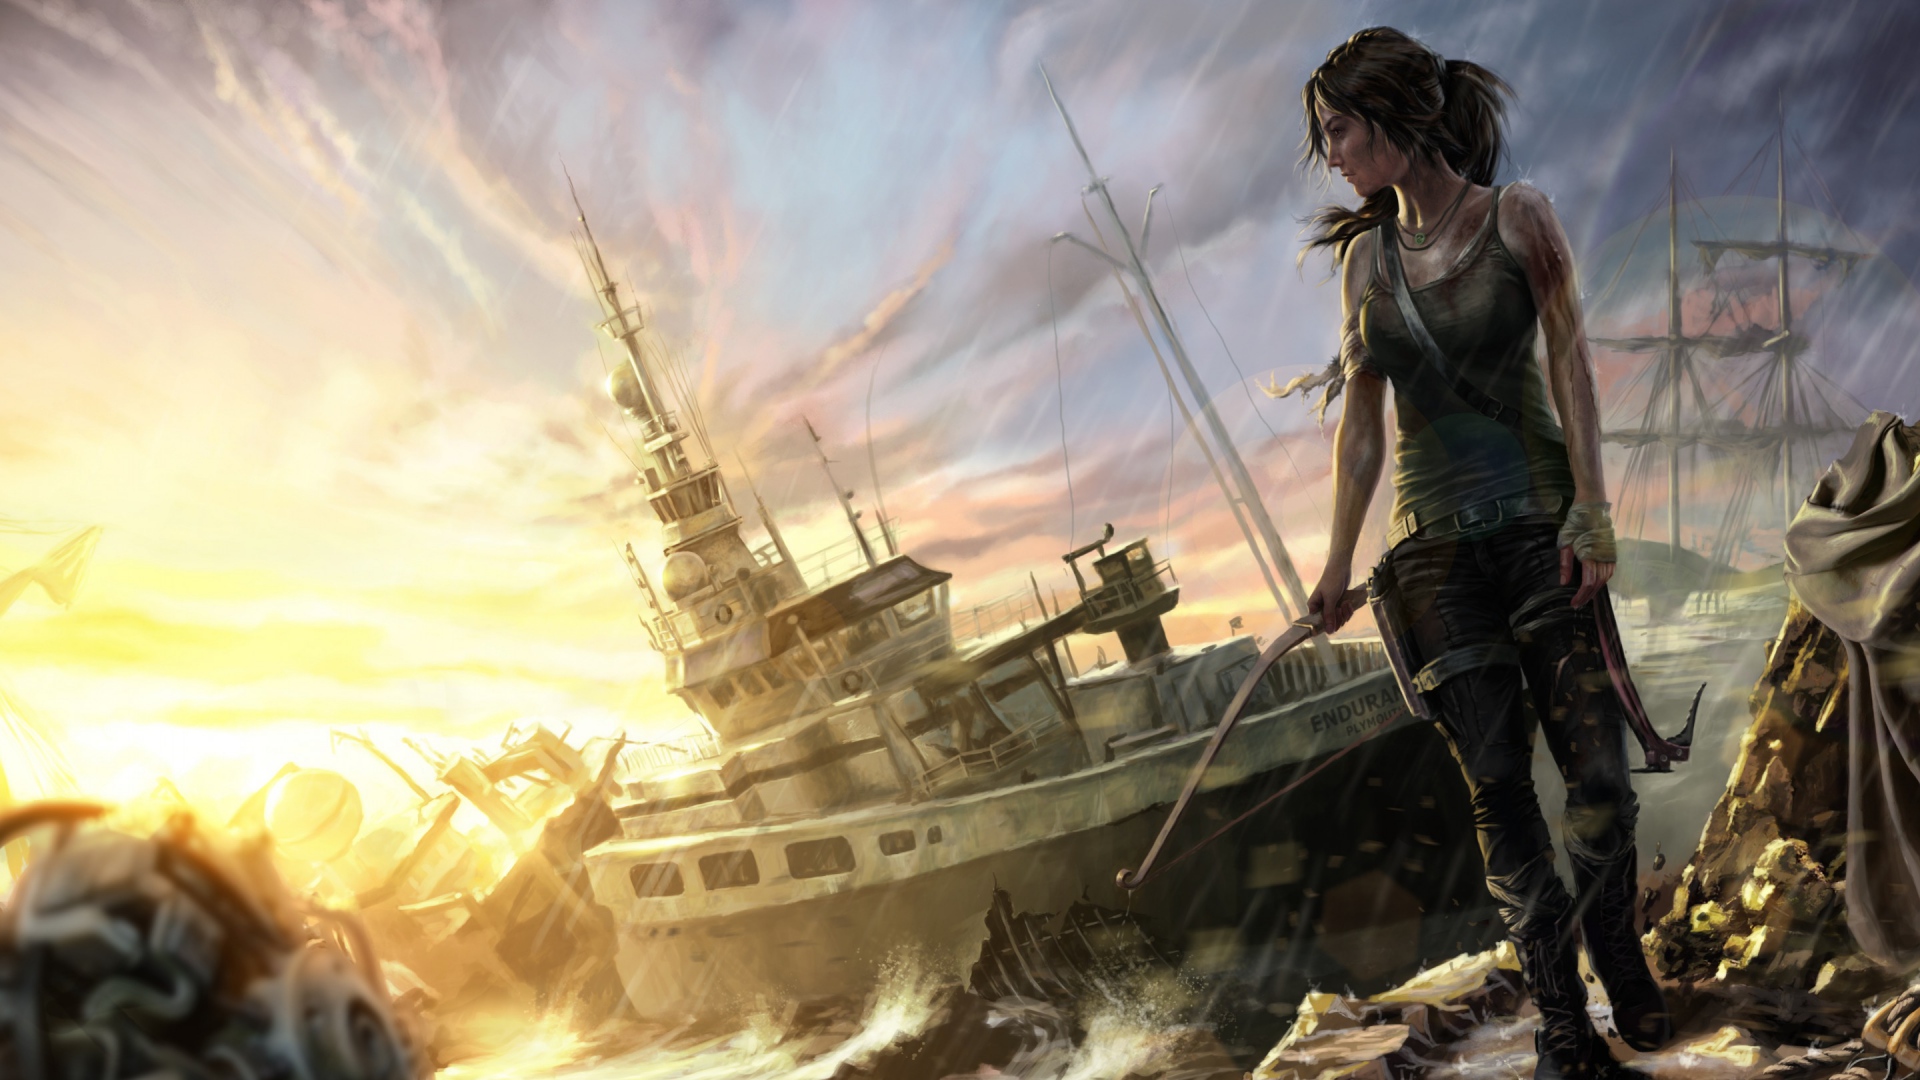 Tomb Raider HD Wallpaper